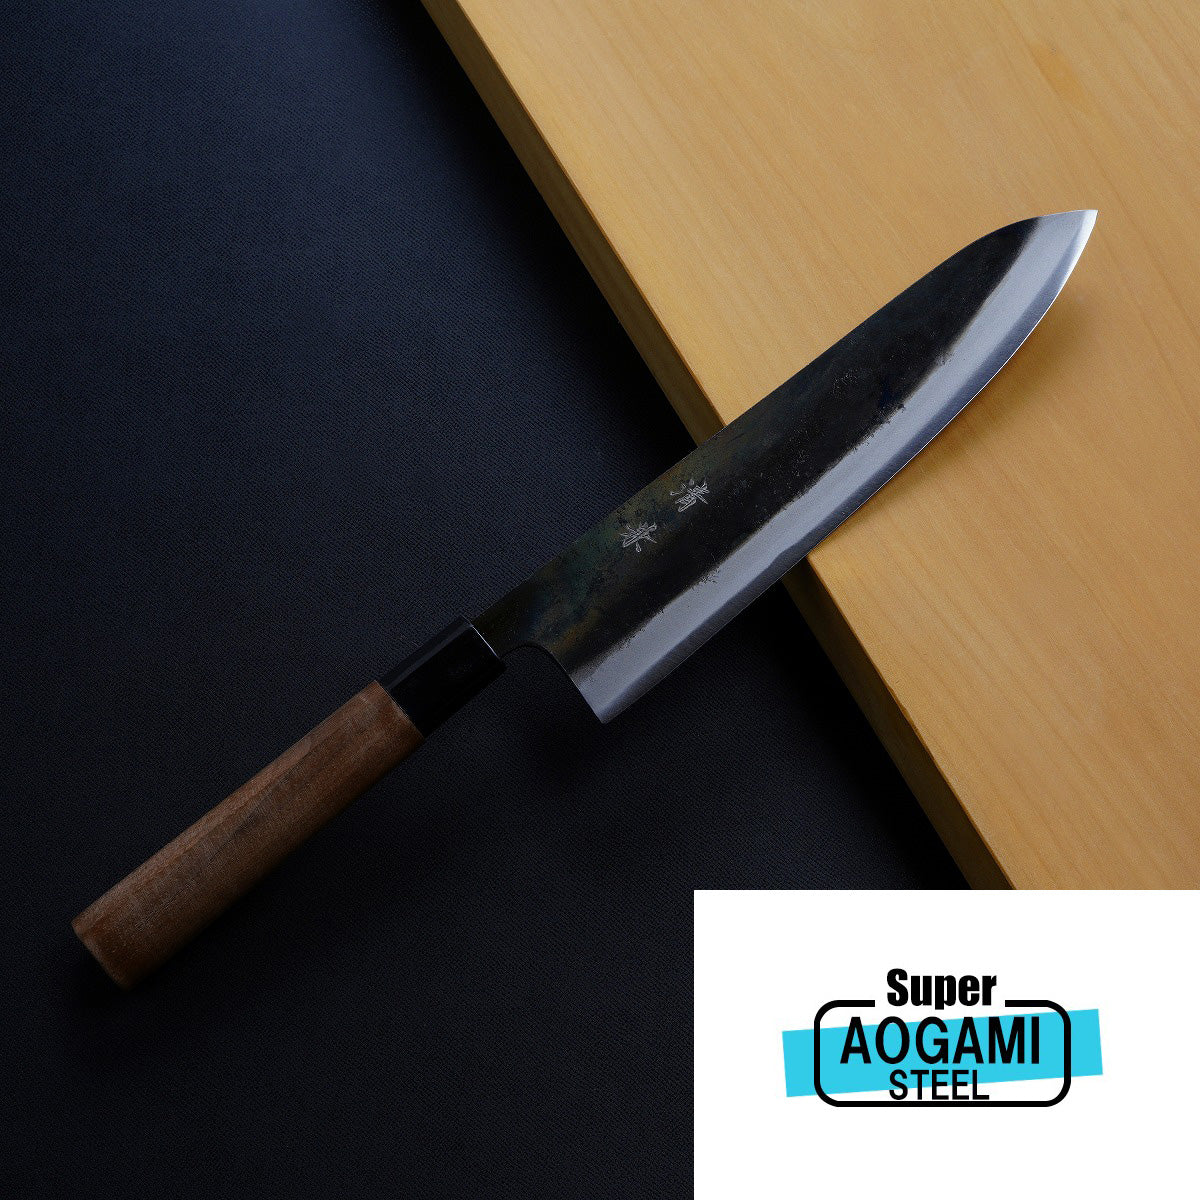 japanese chefs knife